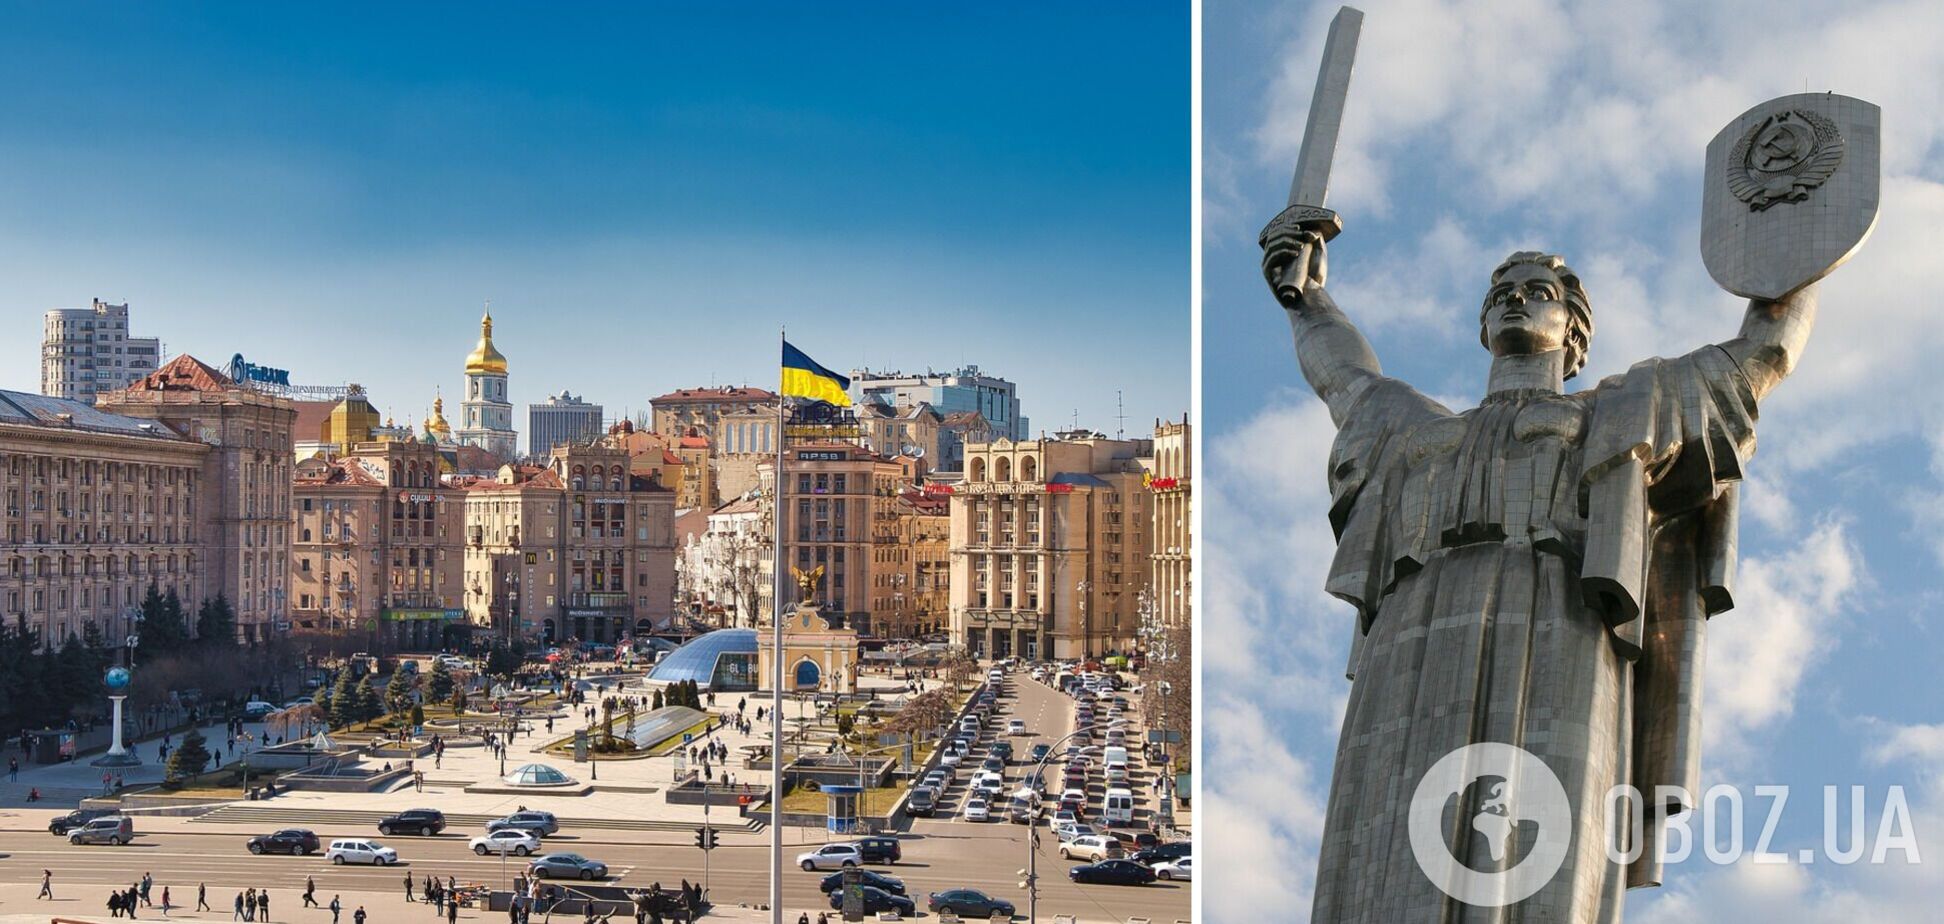 Приховано від туристів: цікаві локації Києва, про які знають лише місцеві